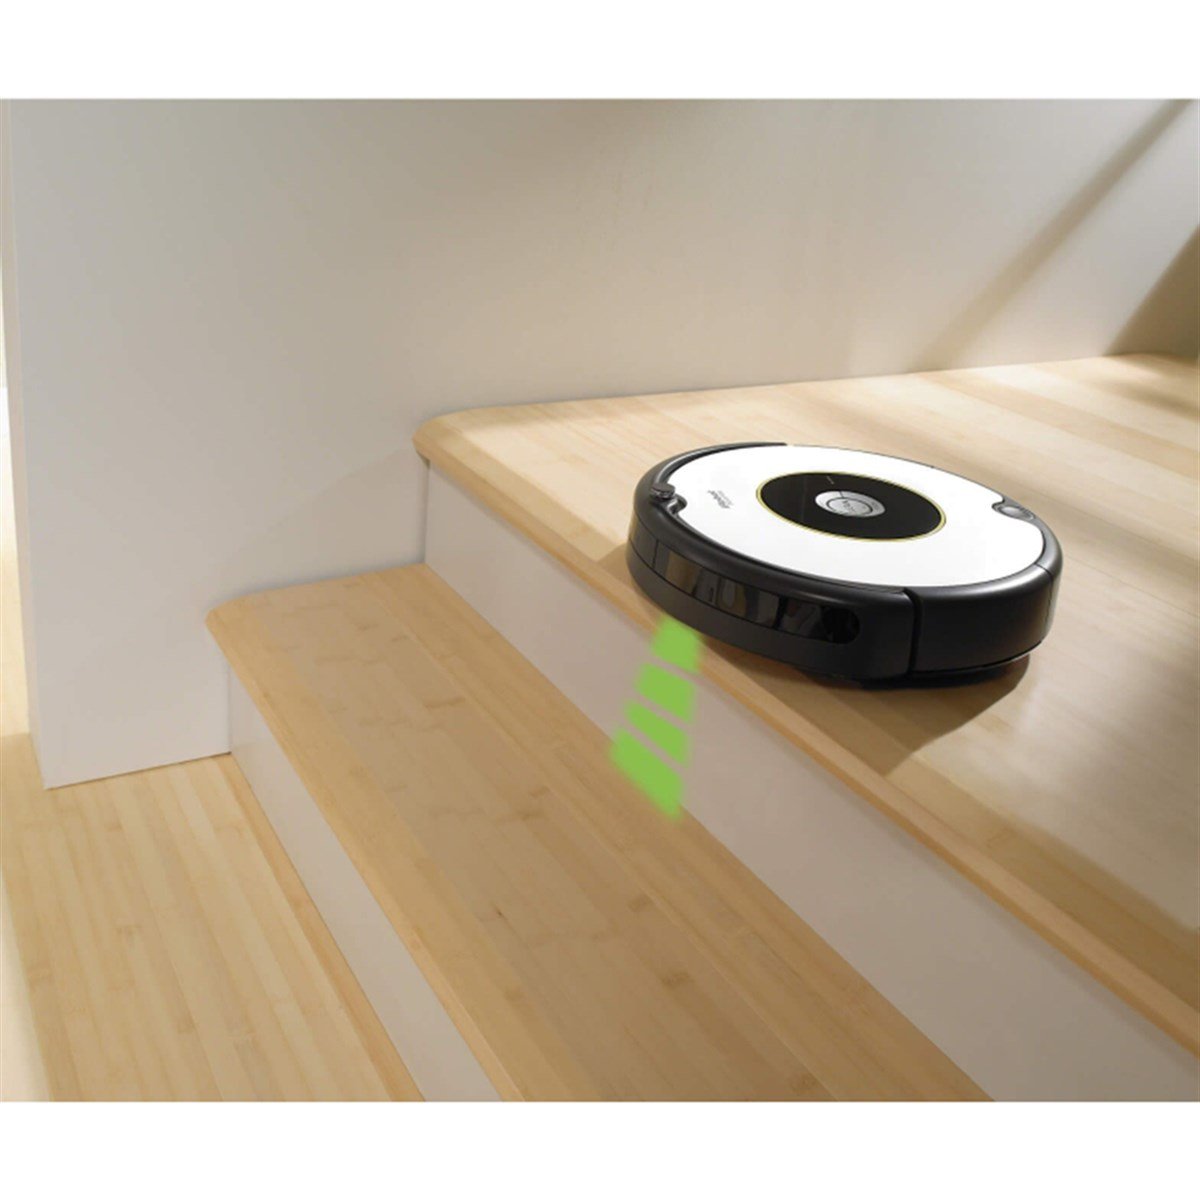 iRobot Roomba 605 Robot Süpürge